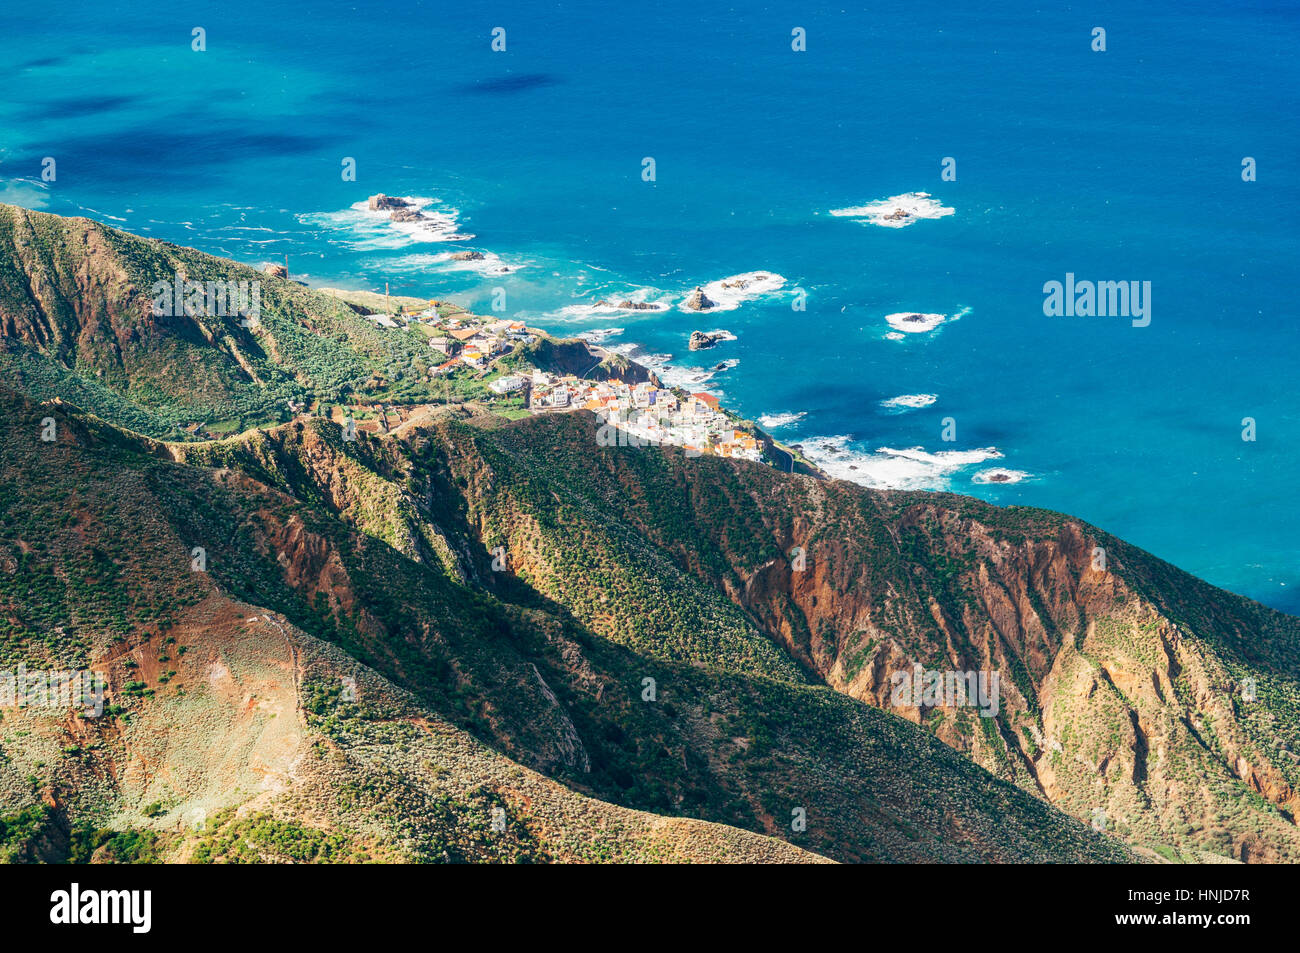 Top view on Almaciga village from Anaga mountains, Tenerife, Spain Stock Photo